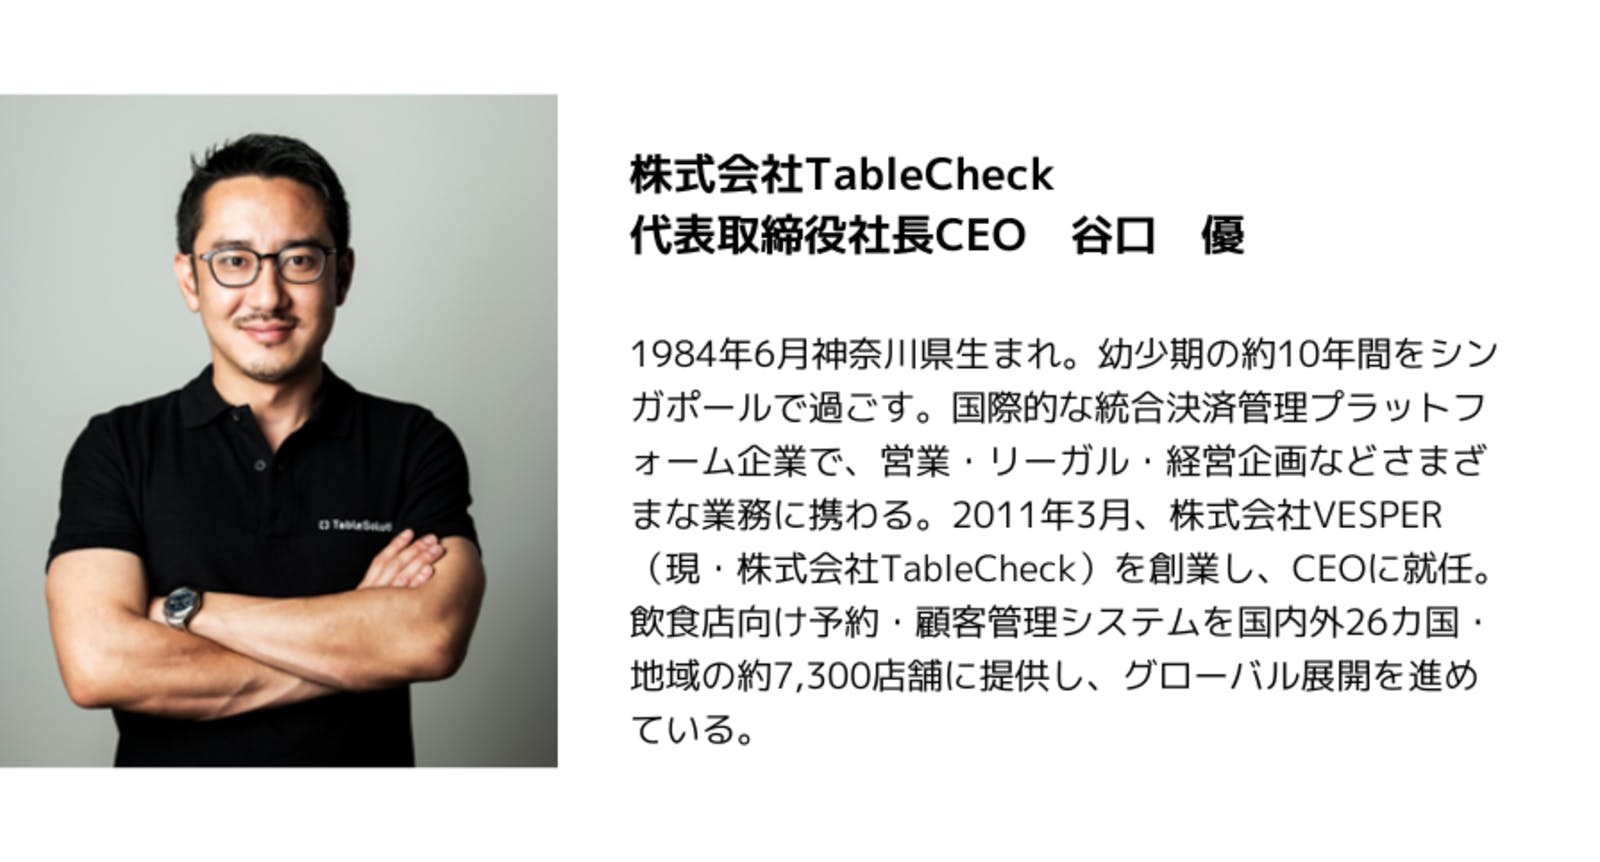 株式会社TableCheck 代表取締役 谷口優